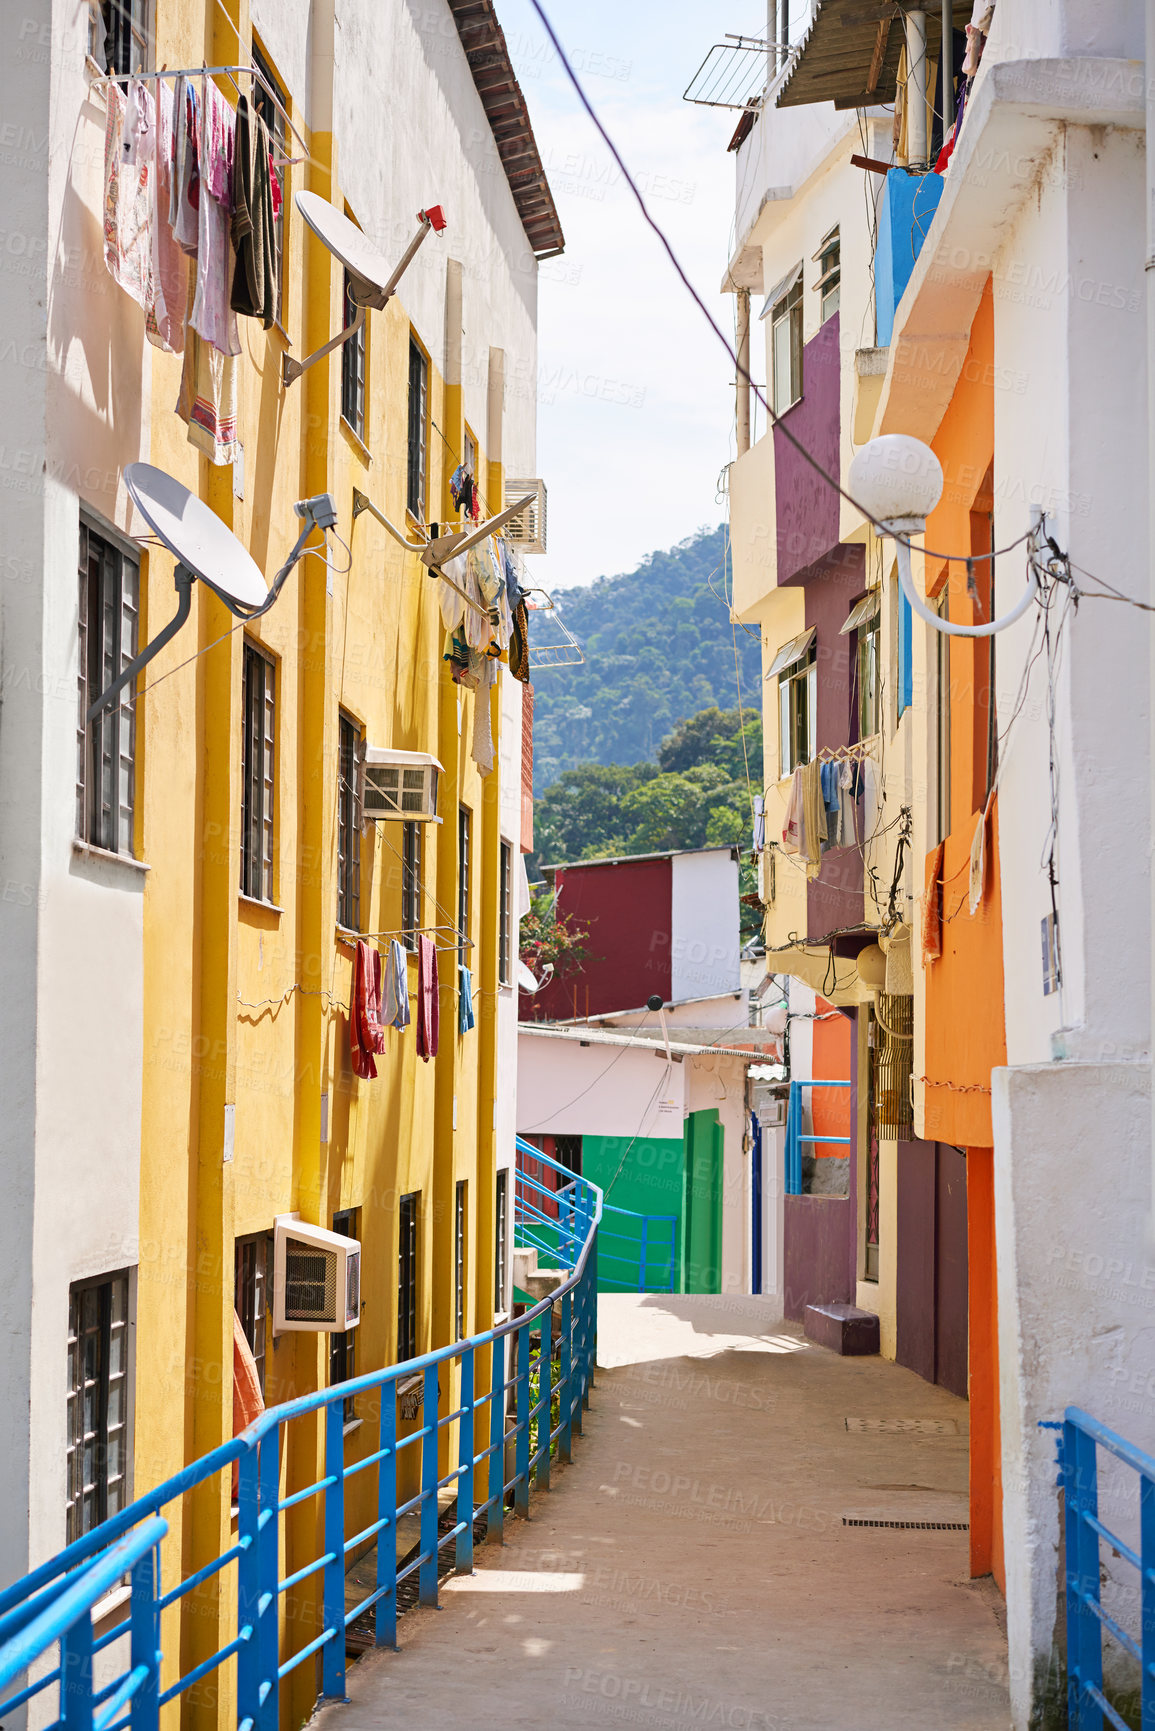 Buy stock photo Shot of a colorful neighbourhood in Rio de Janeiro, Brazil